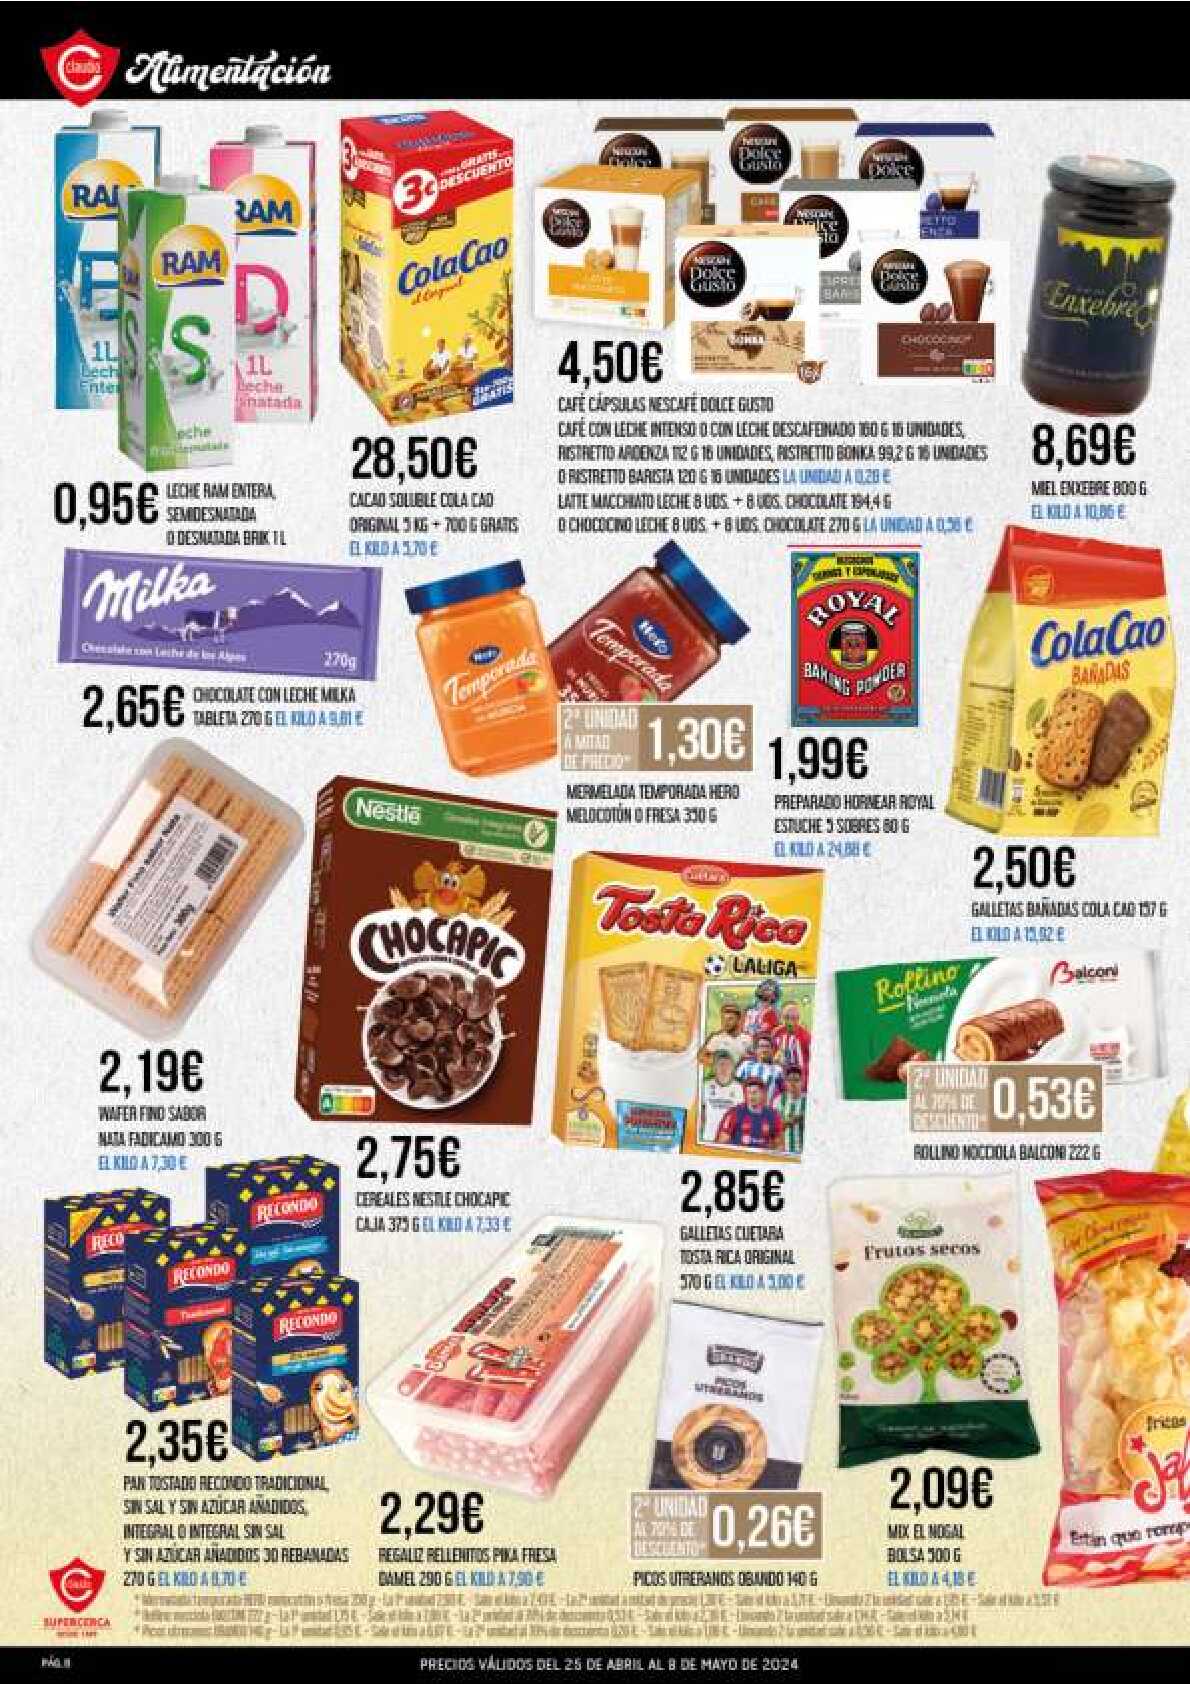 Ofertas quincenales Supermercado Claudio. Página 08